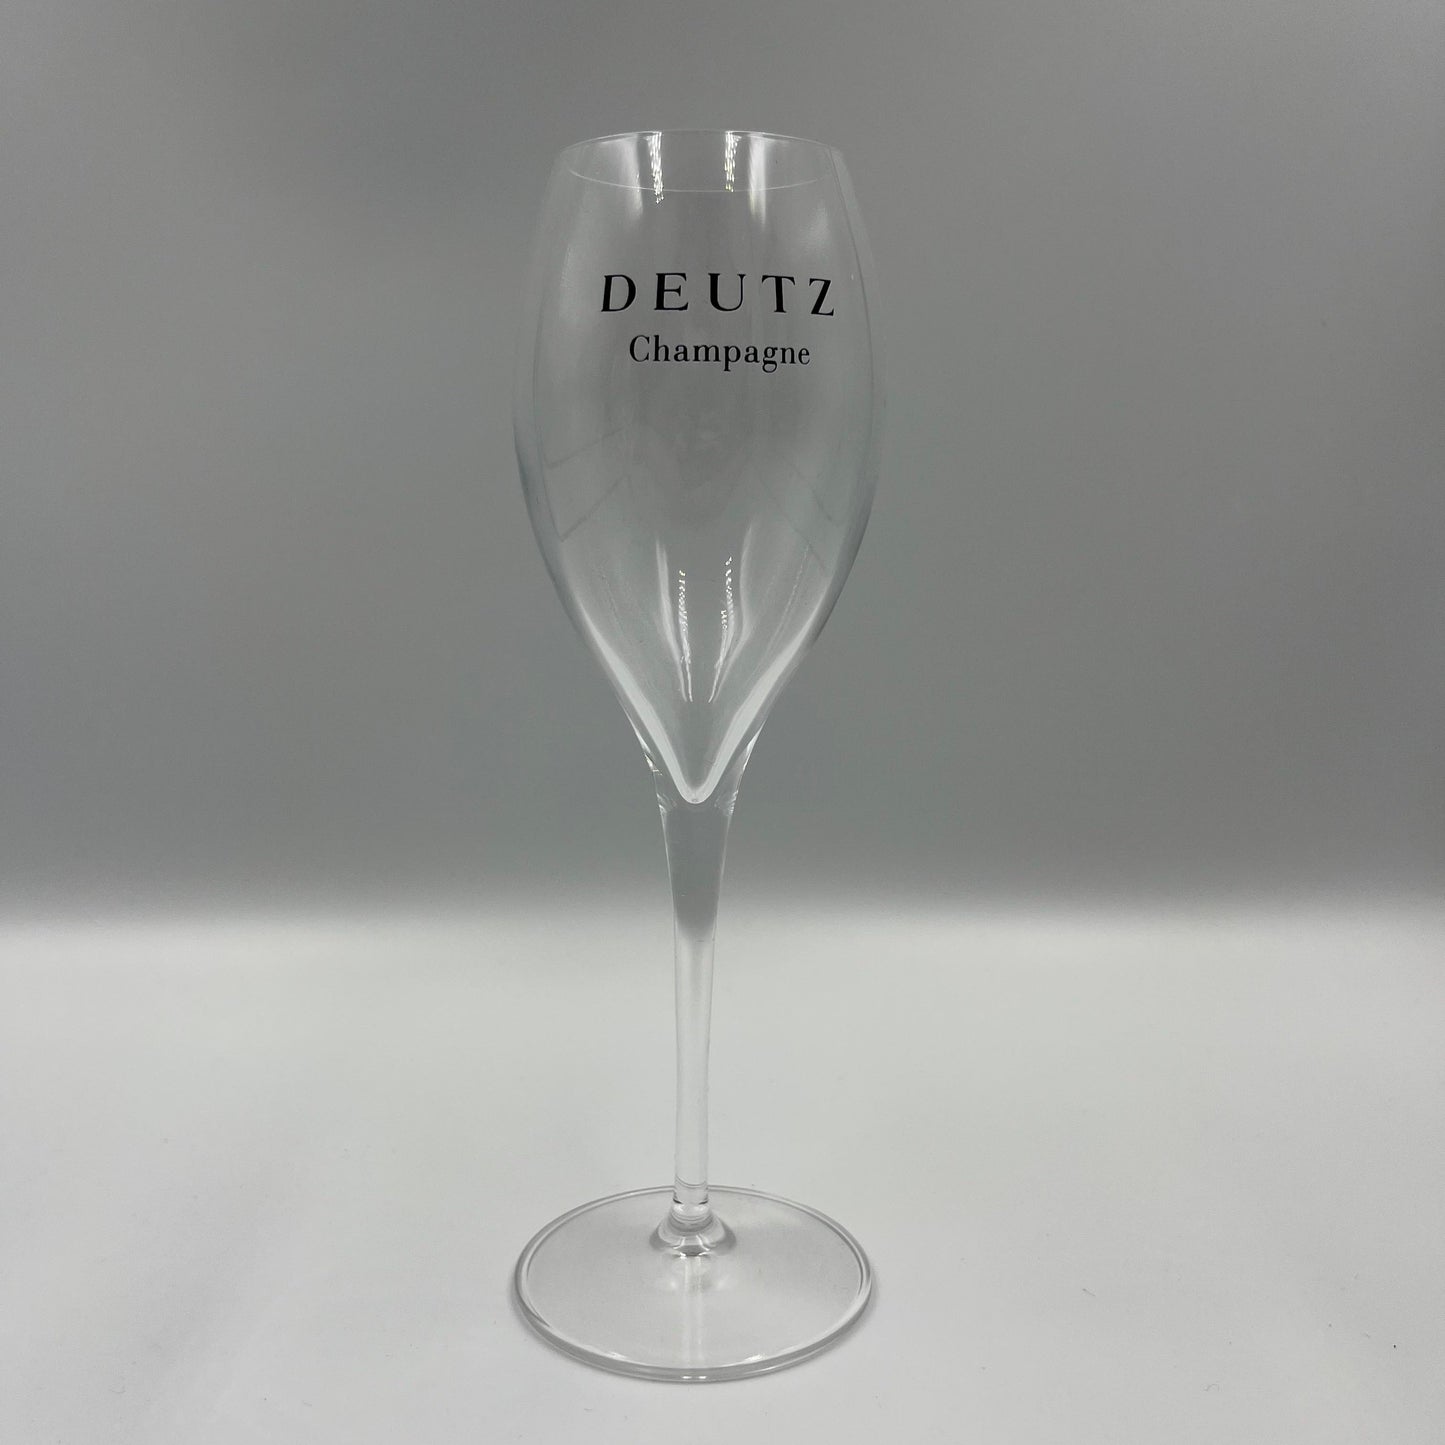 Deutz Champagne Glasses